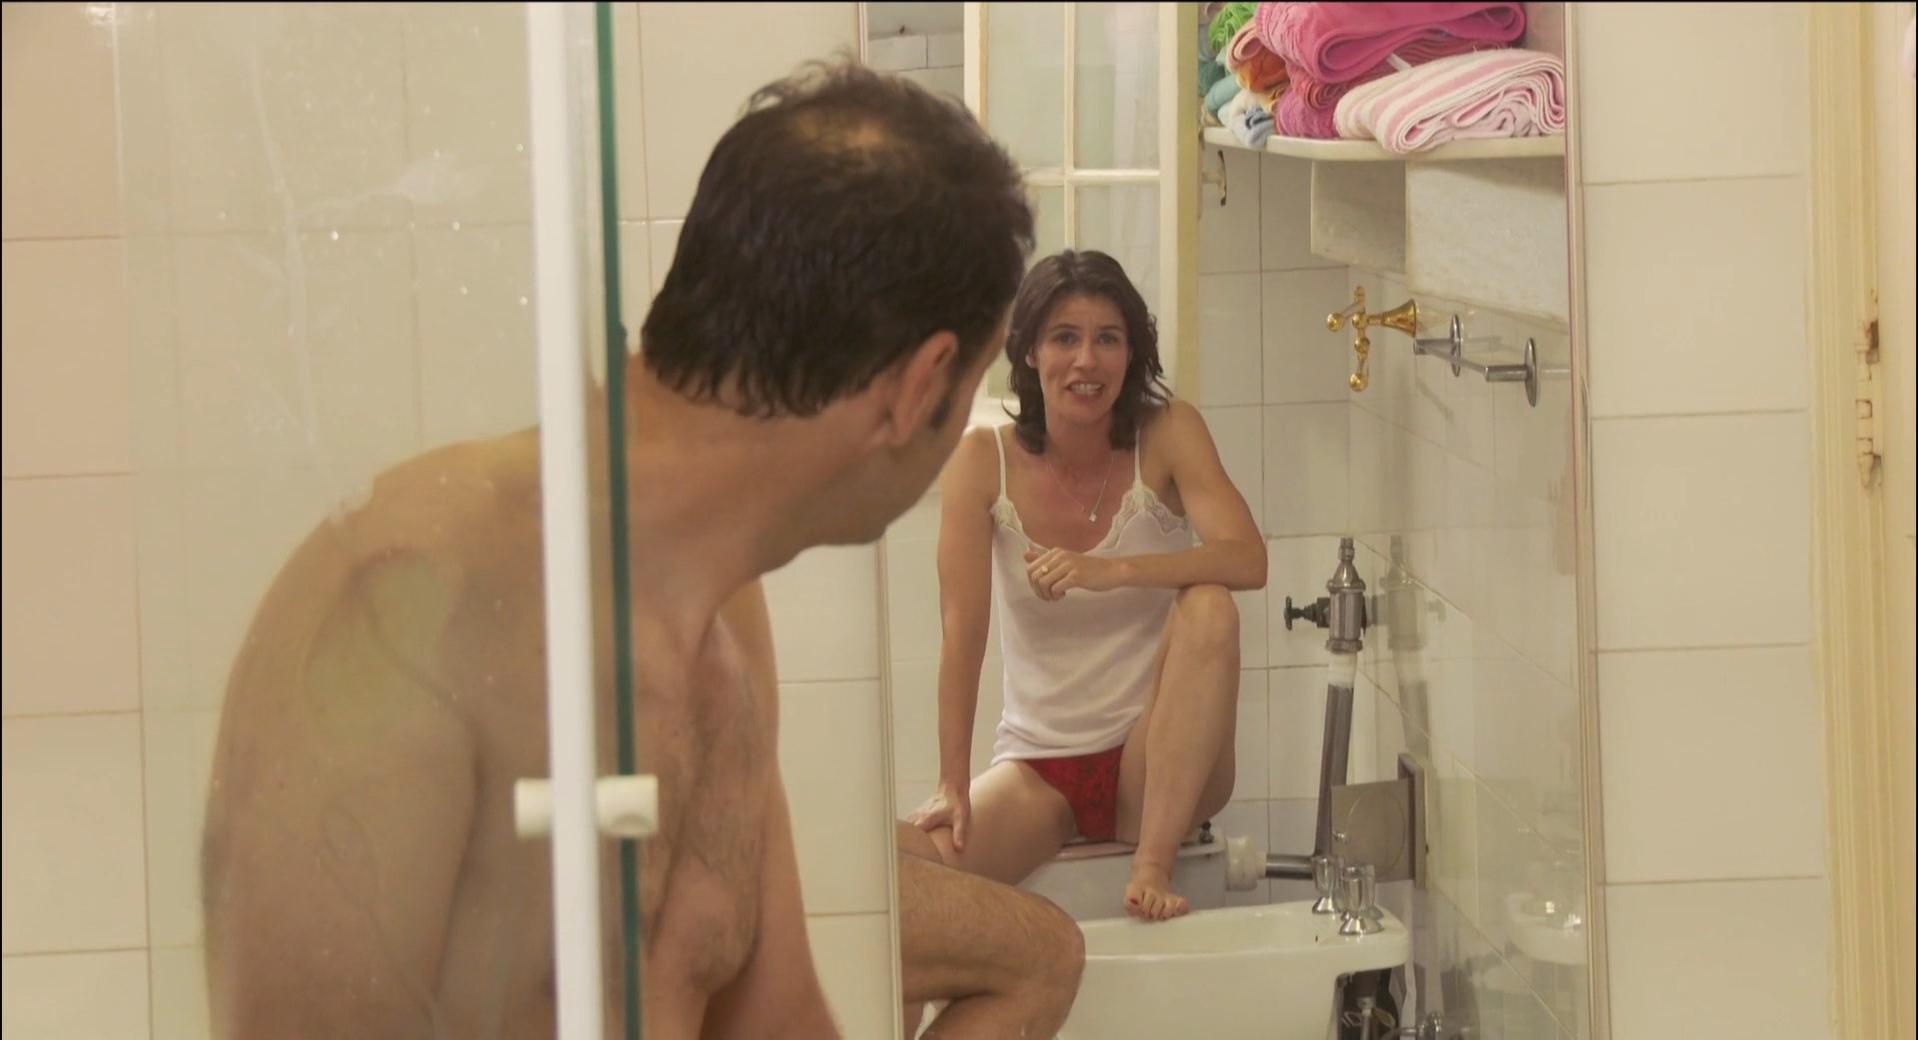 Nude Video Celebs Irene Jacob Nude Rio Sex Comedy